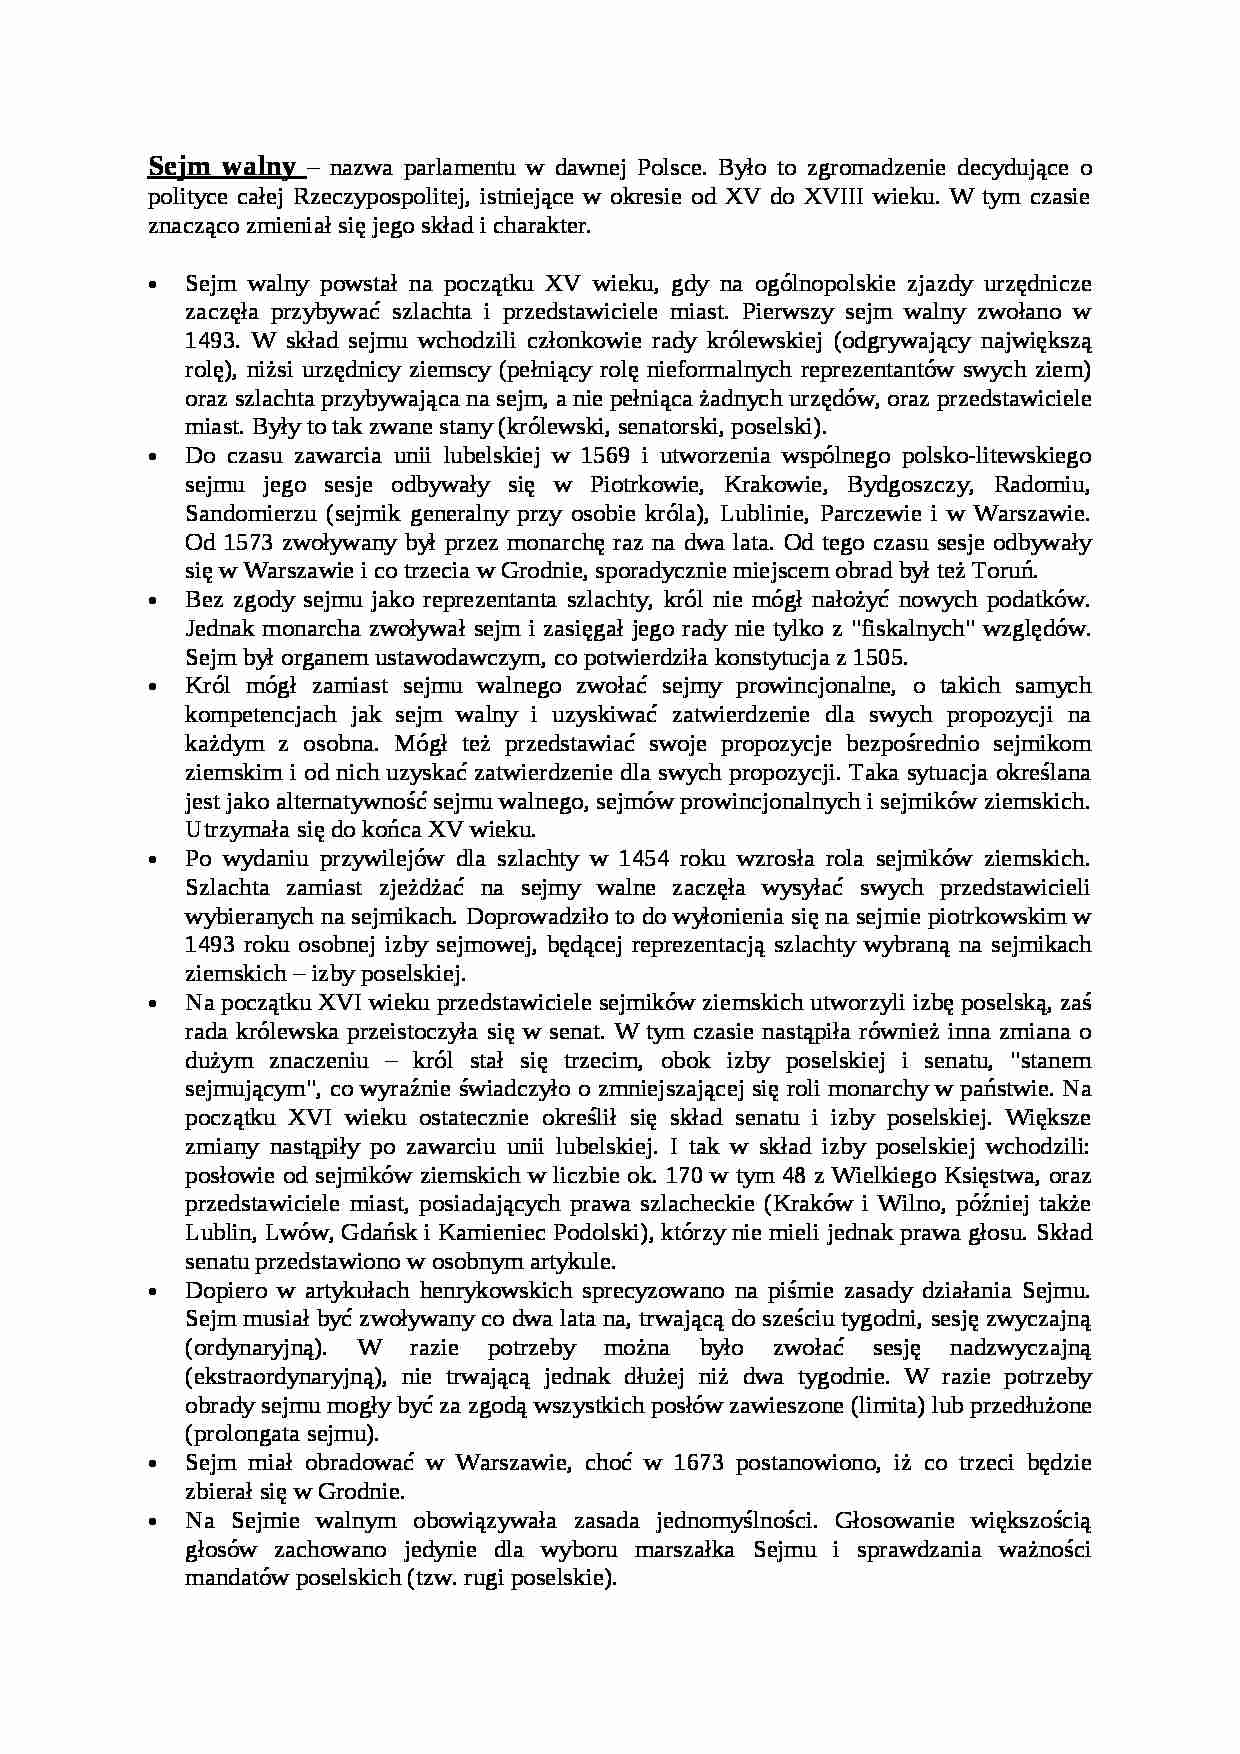 Sejm walny - omówienie - strona 1